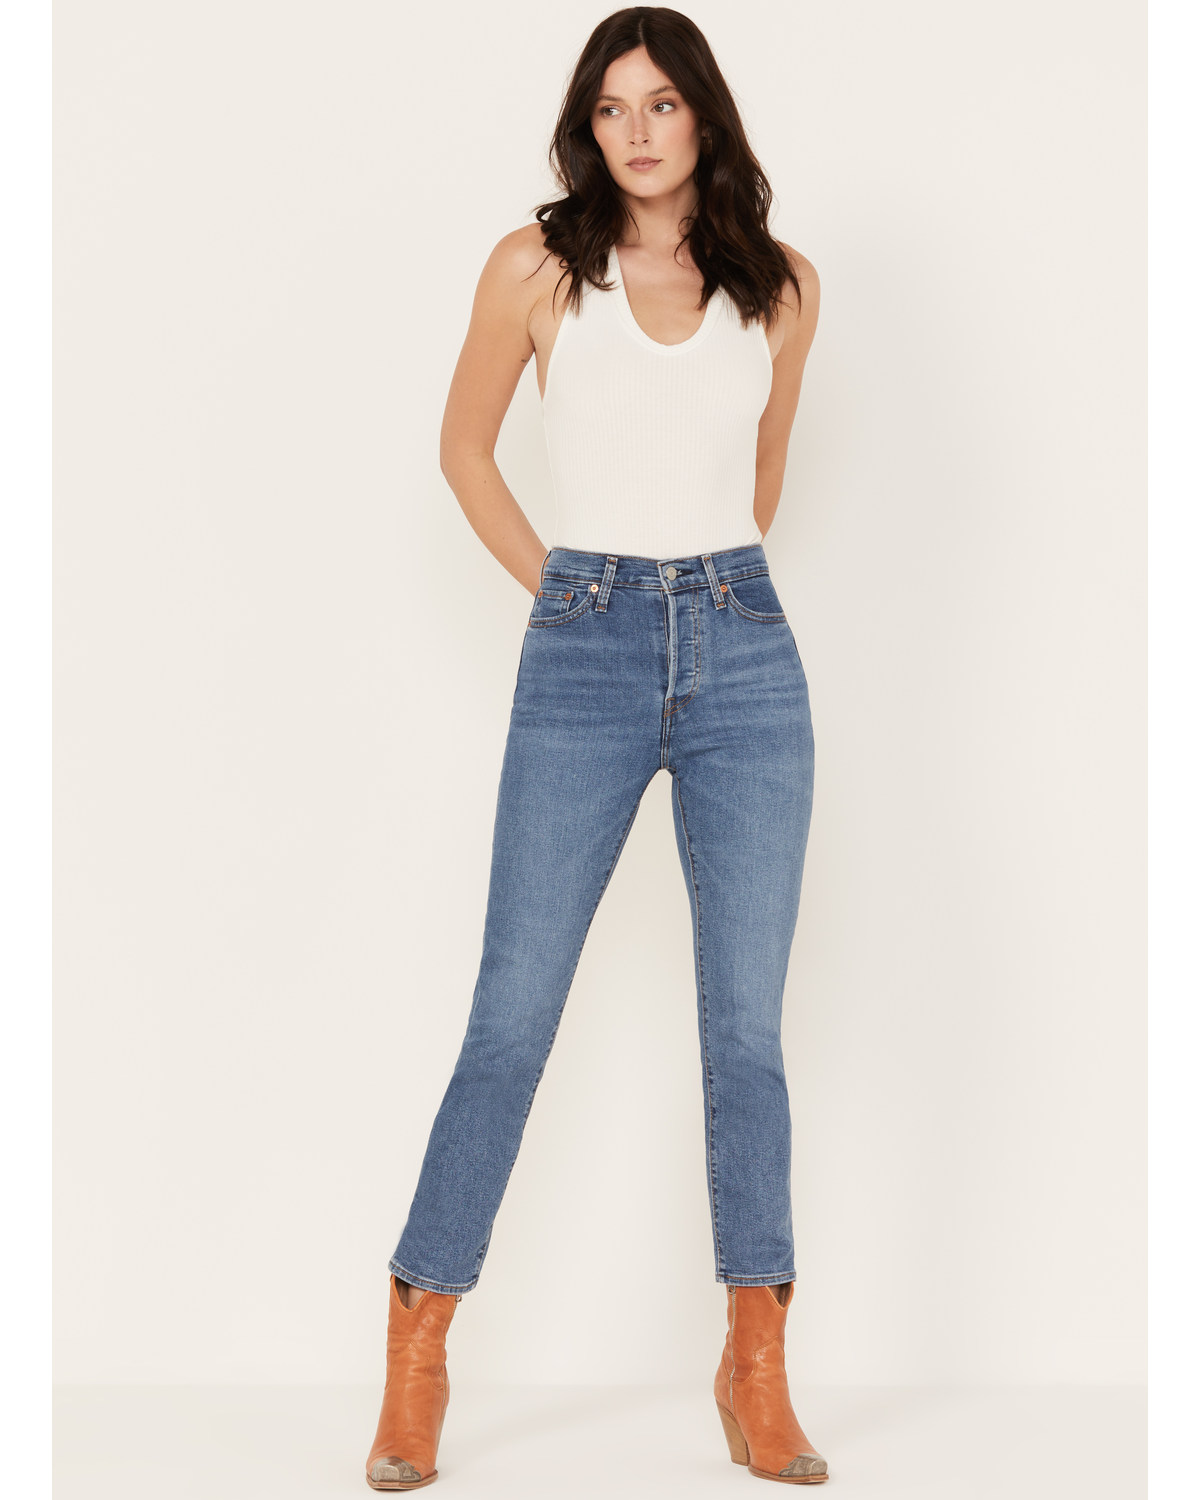 Levi's Women's Medium Wash Summer Love Wedgie Straight Jeans